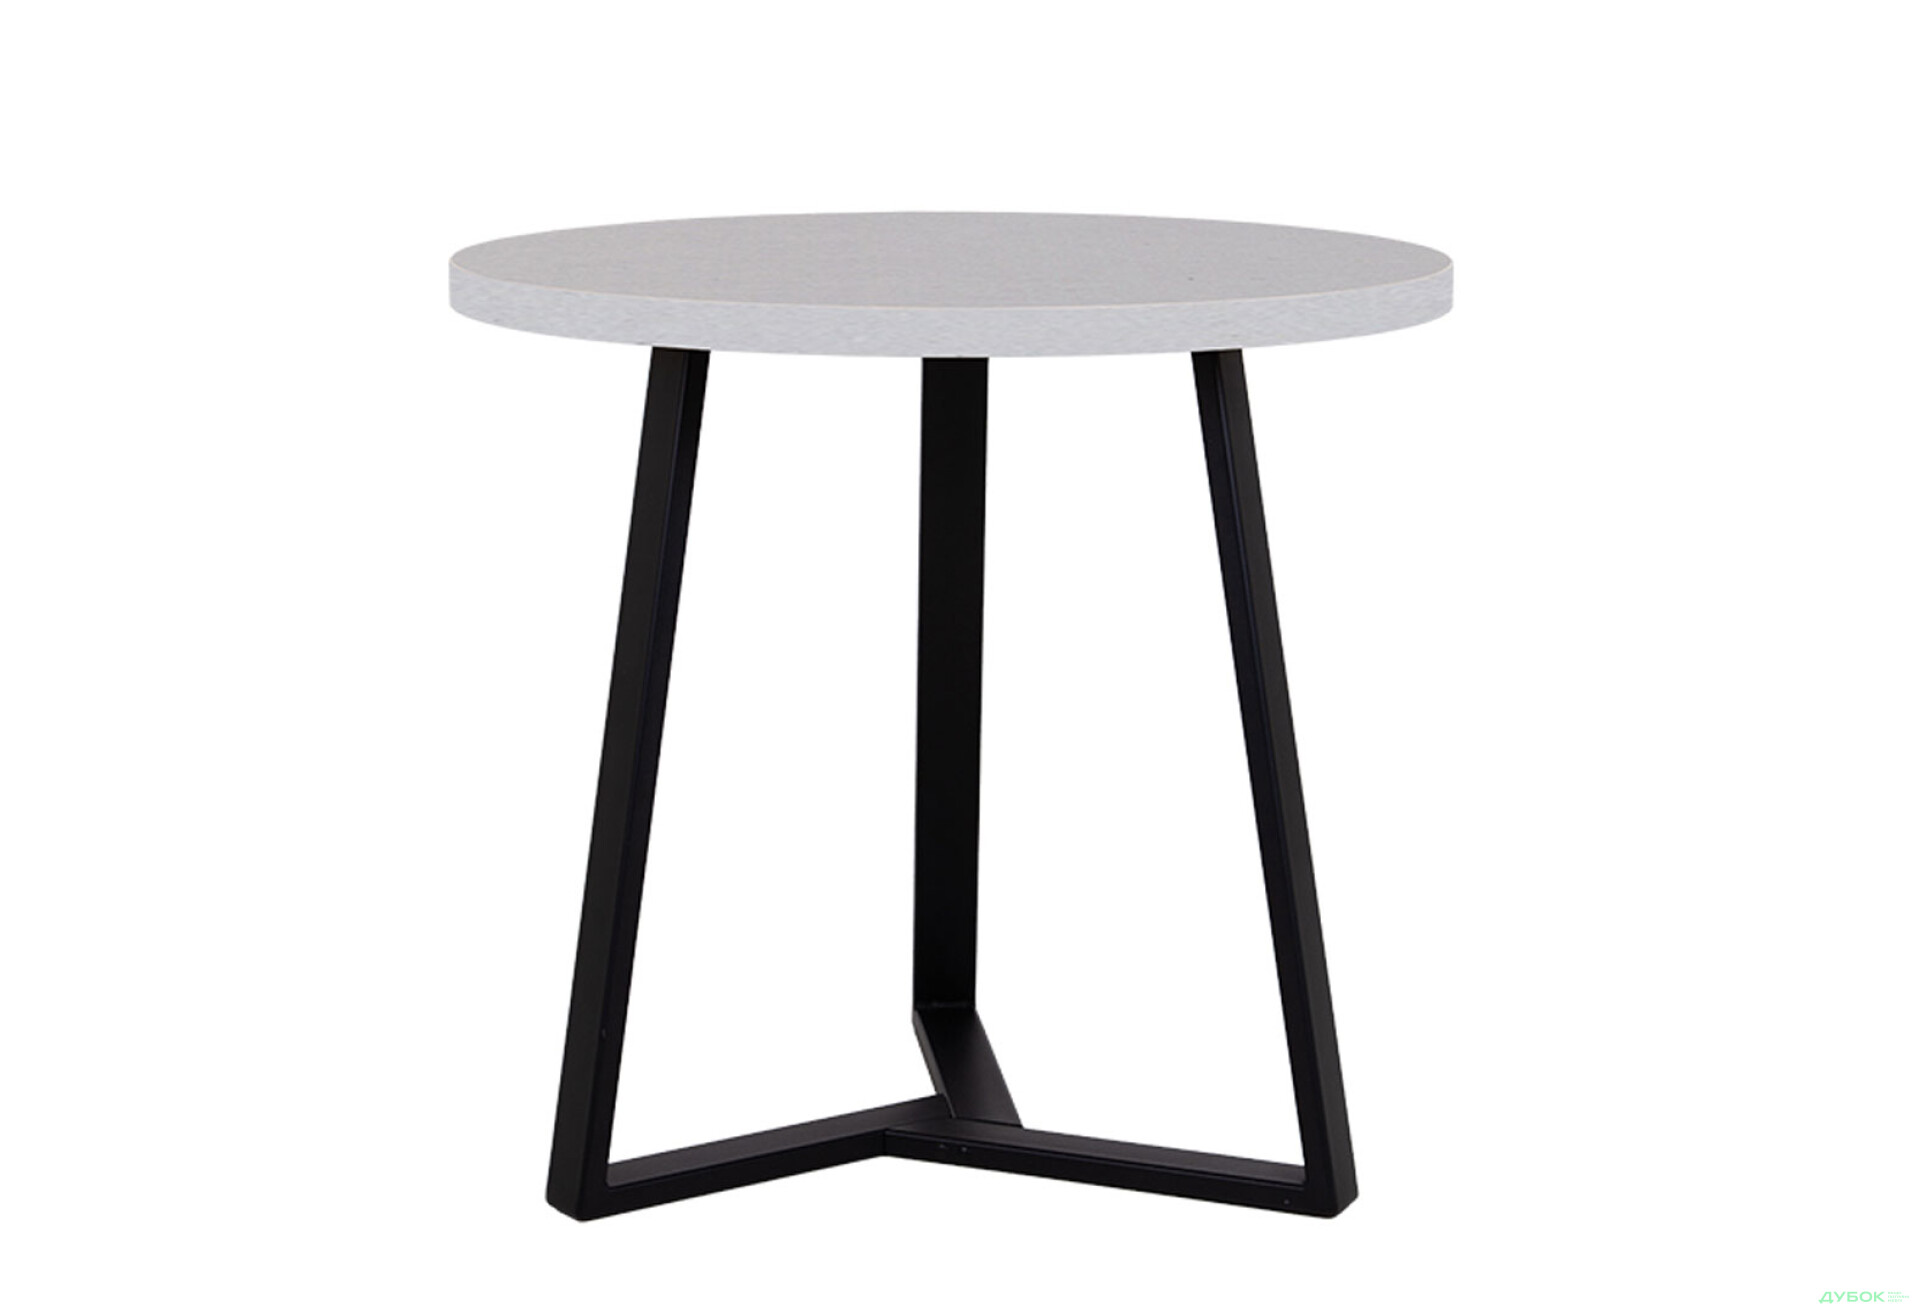 Фото 1 - Стол обеденный Новый Стиль Calipso black (36) D800 80x80 см, серый